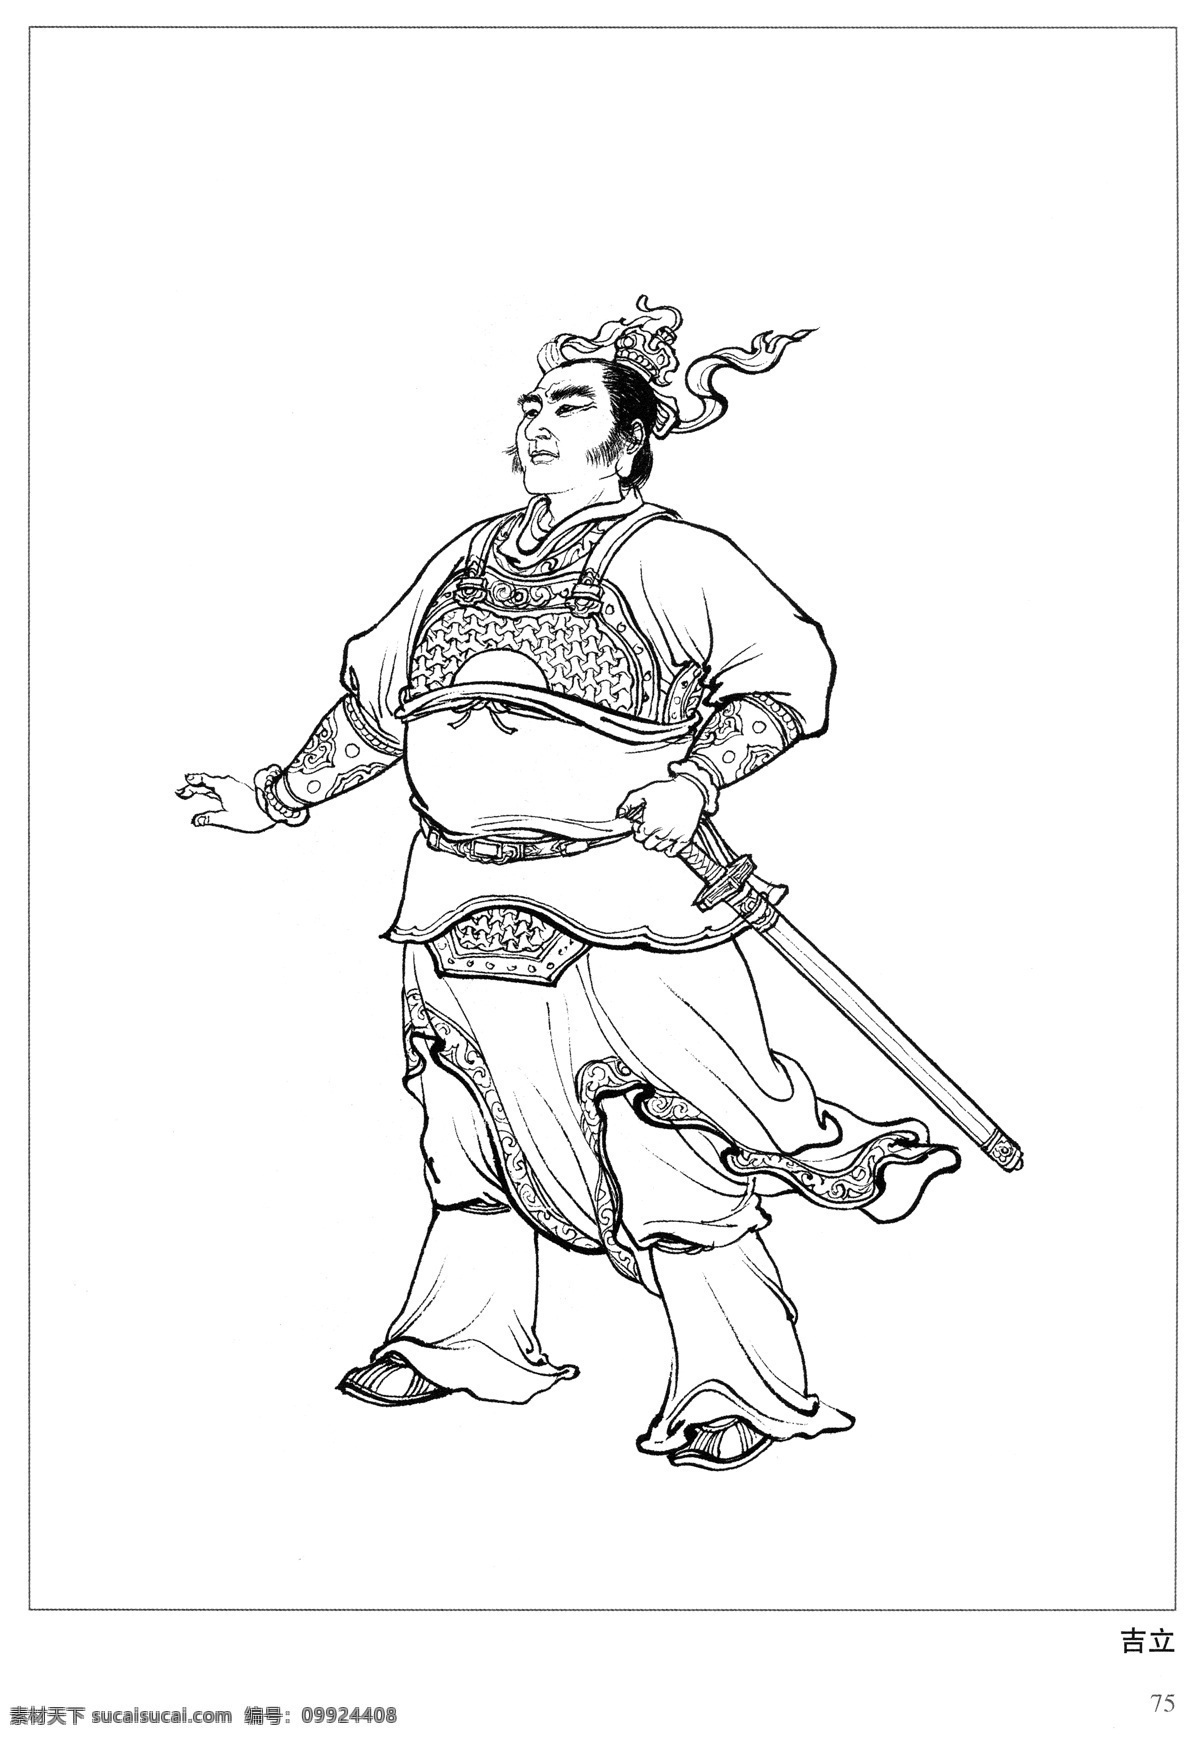 吉立 封神演义 古代 神仙 白描 人物 图 文化艺术 传统文化